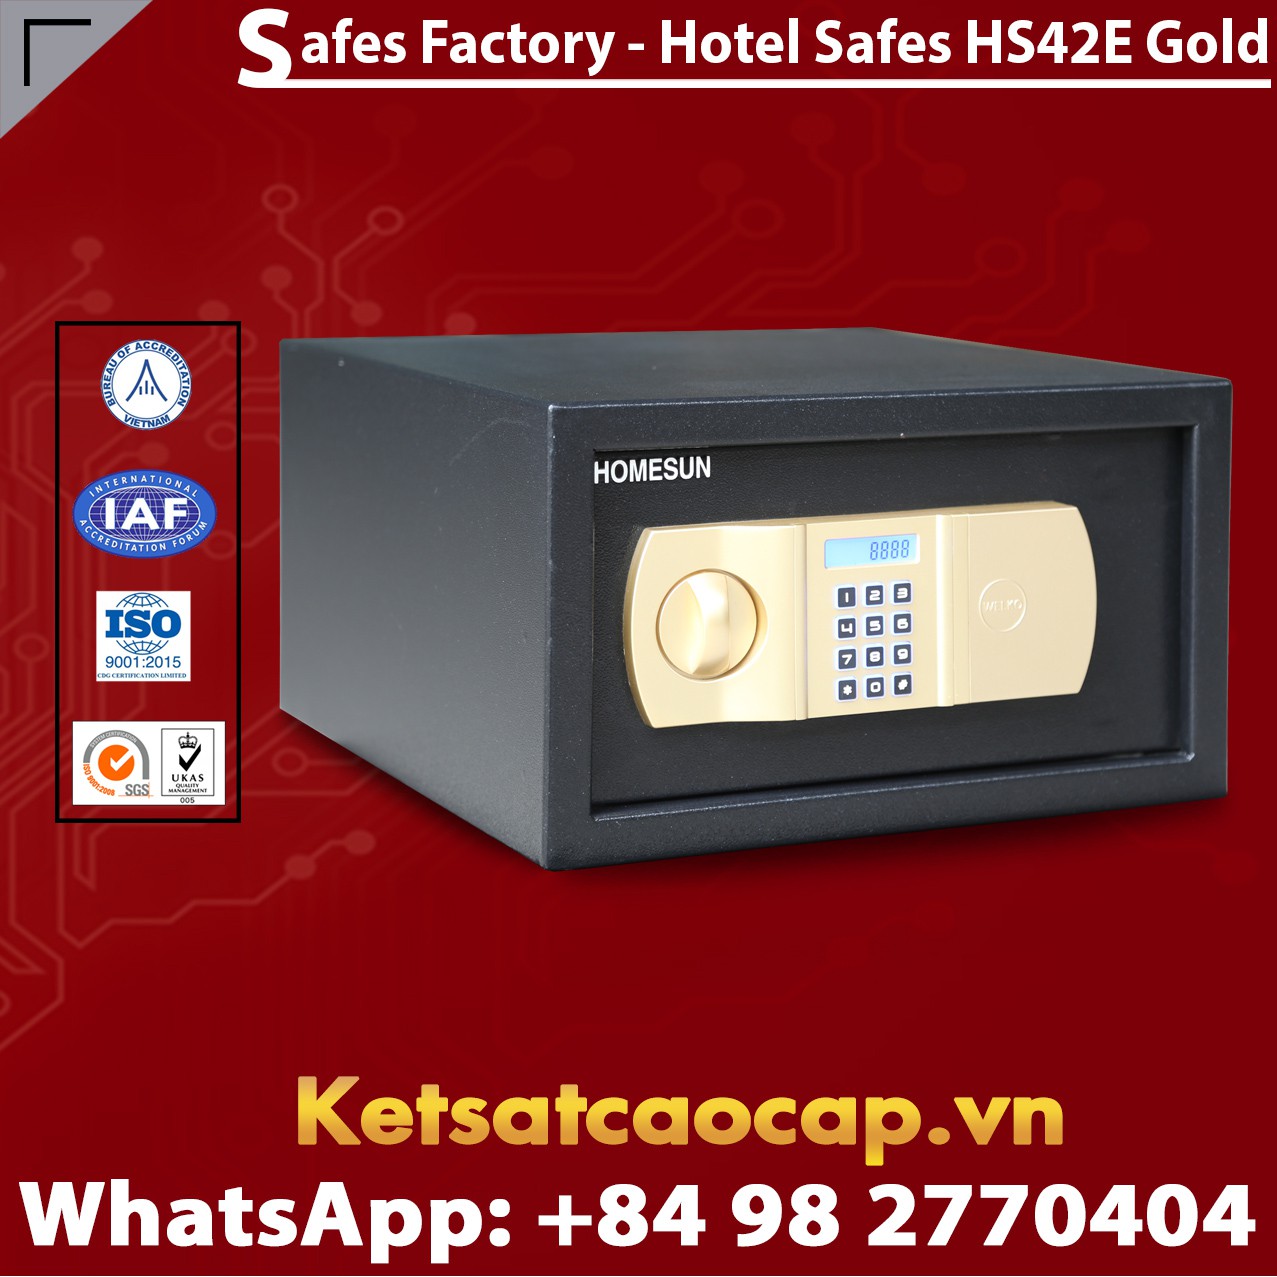 Safes in Hotel HOMESUN HS42 E Gold